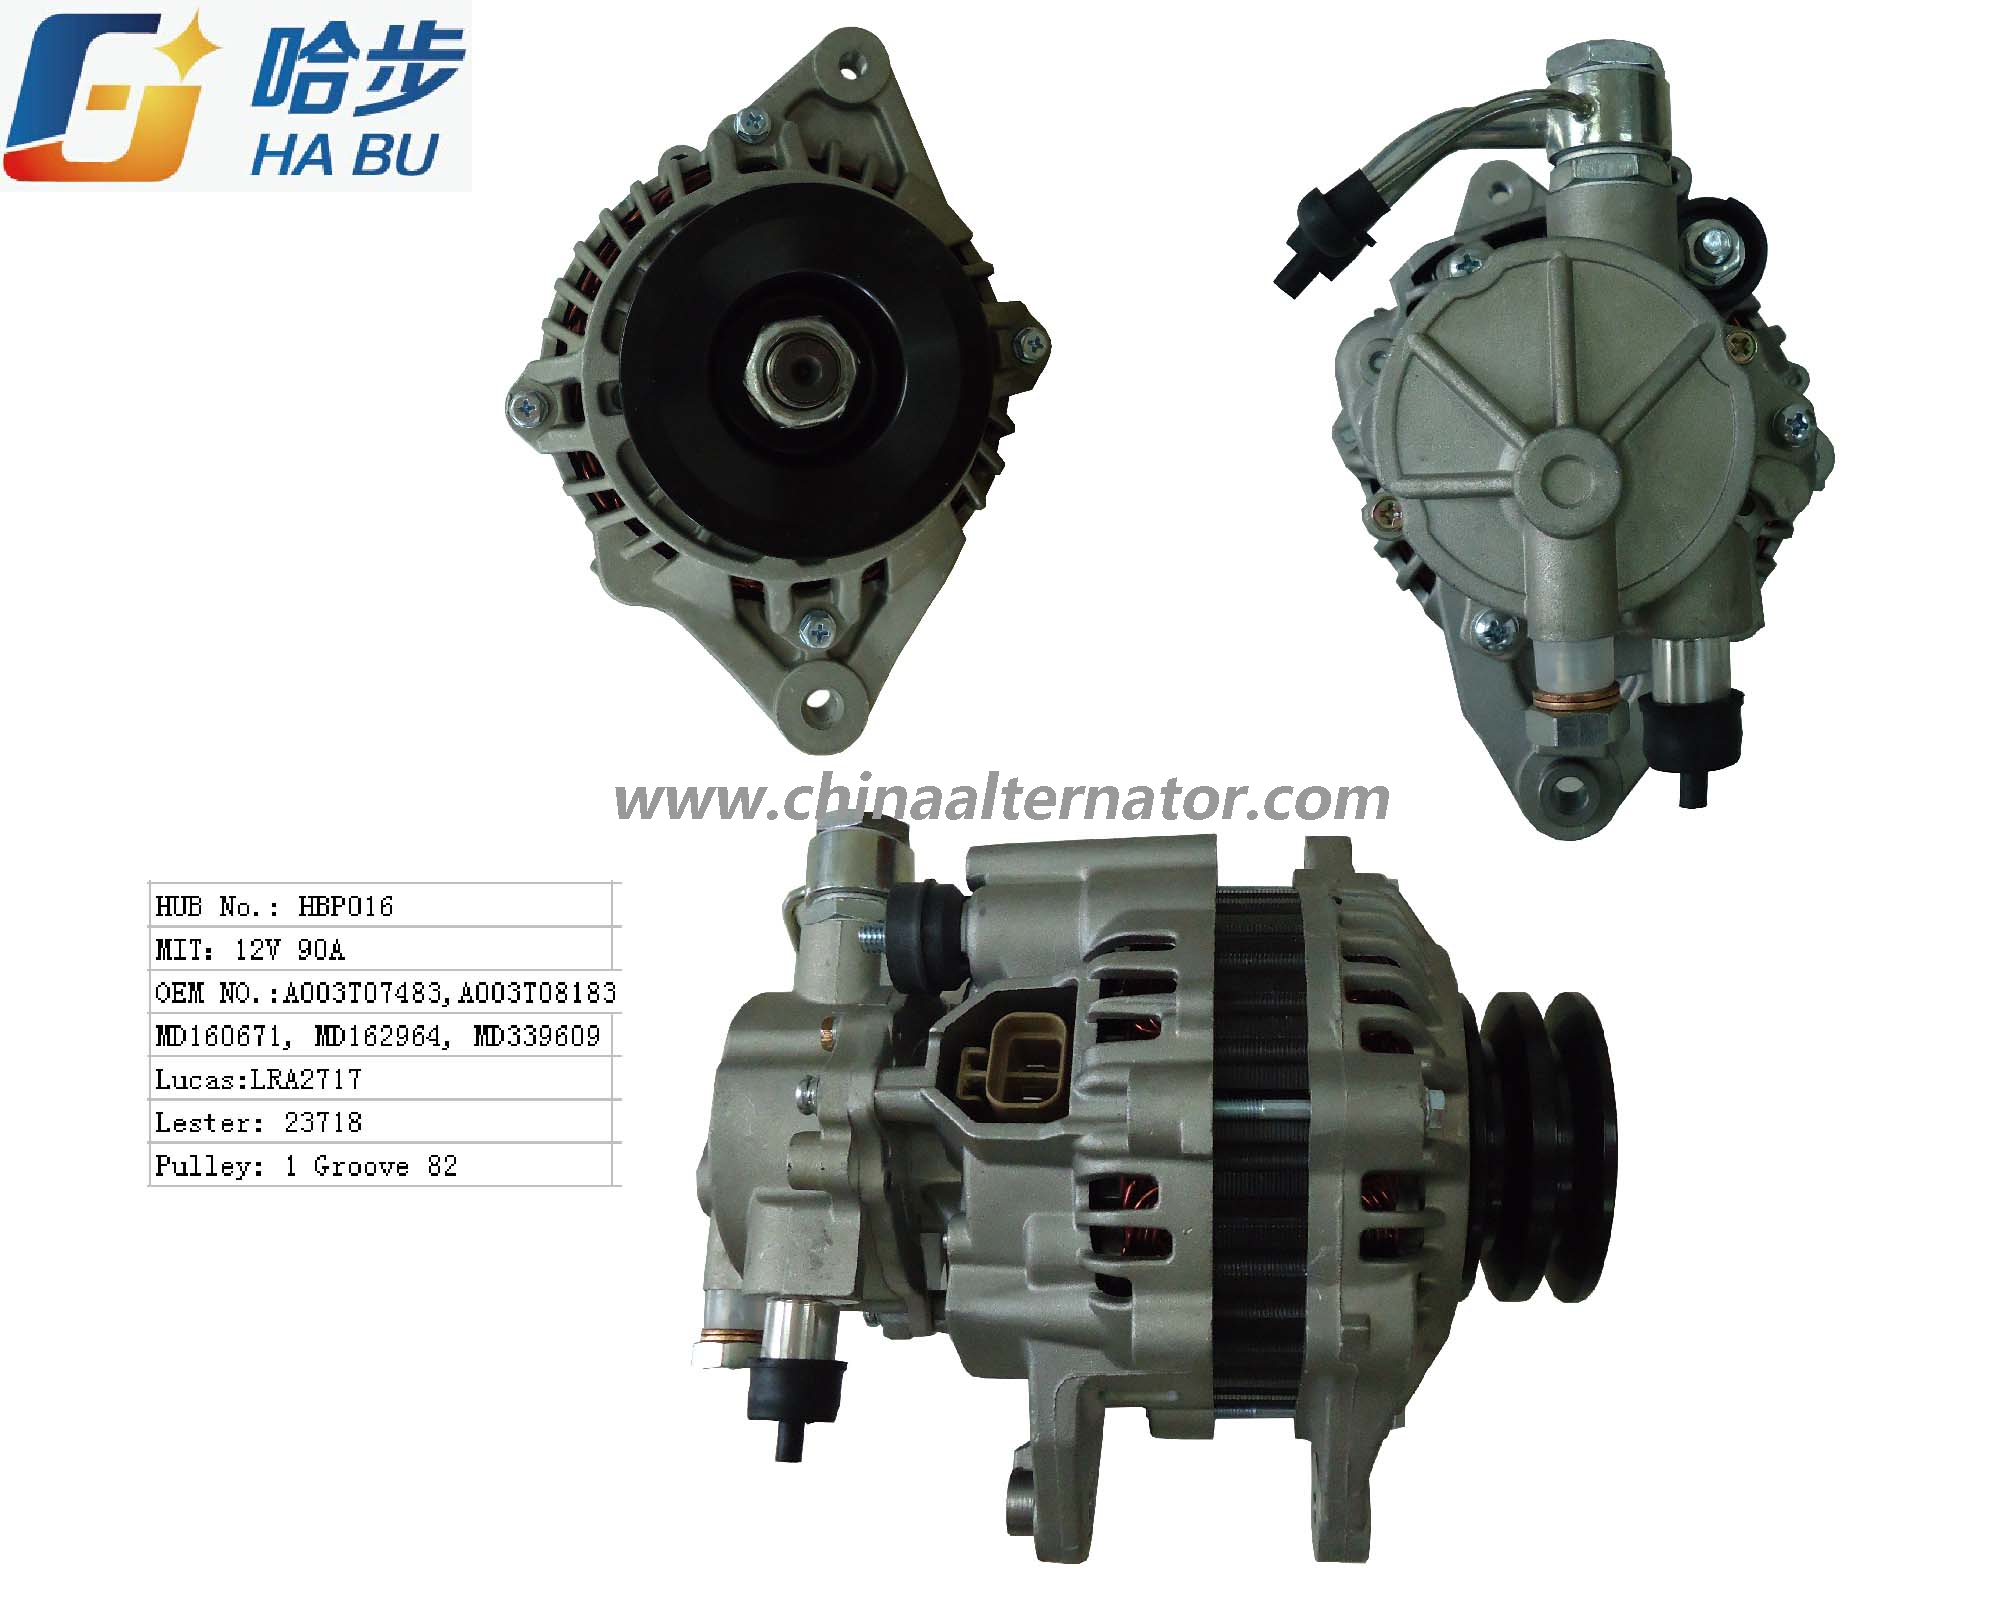 Alternator for Mitsubishi 12V 90A 23718 A3t07483